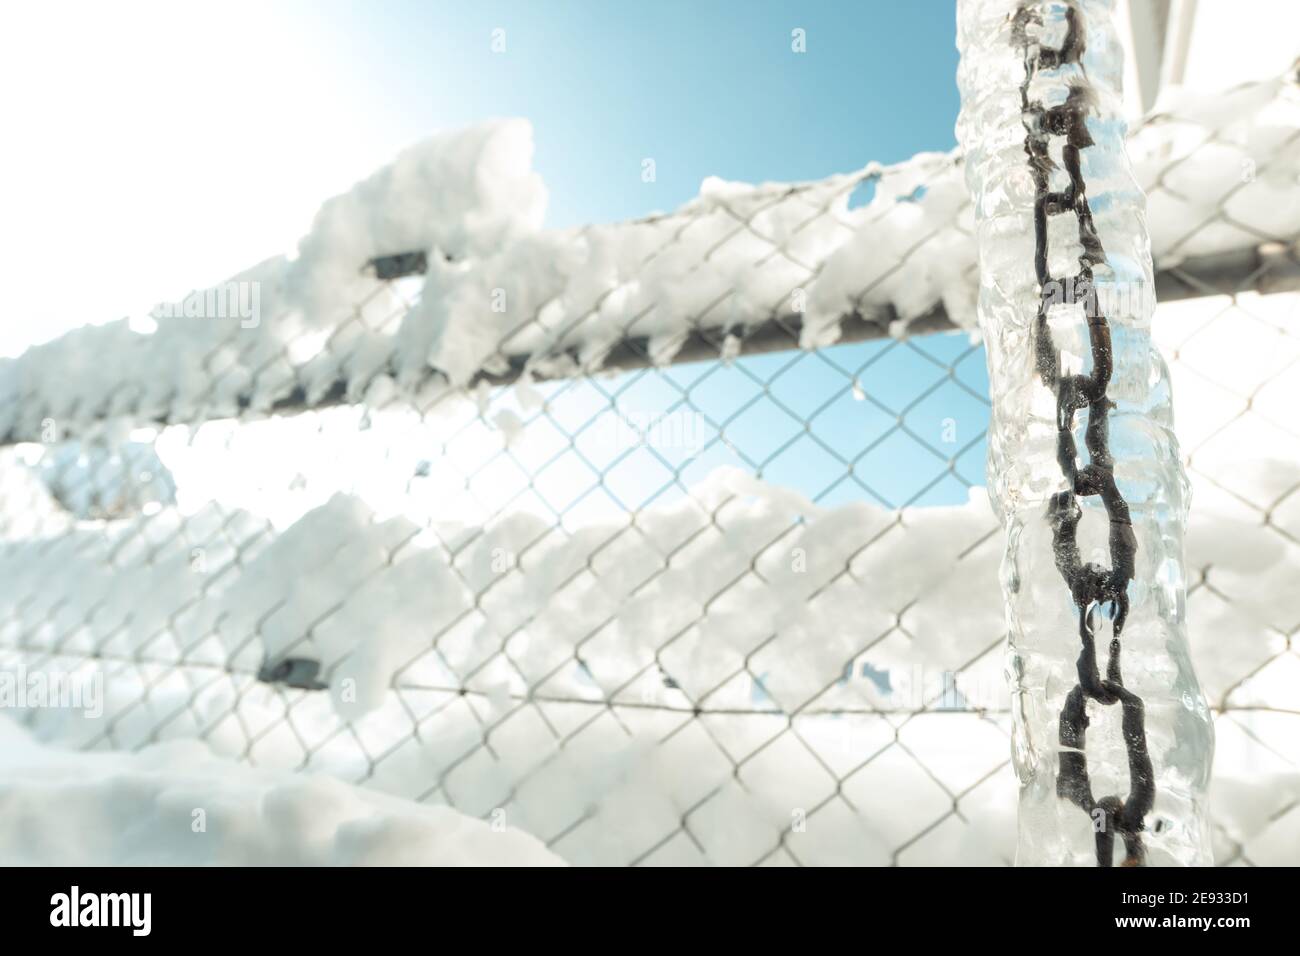 vue en grand angle de la chaîne surgelée et de la clôture recouverte de neige en hiver Banque D'Images